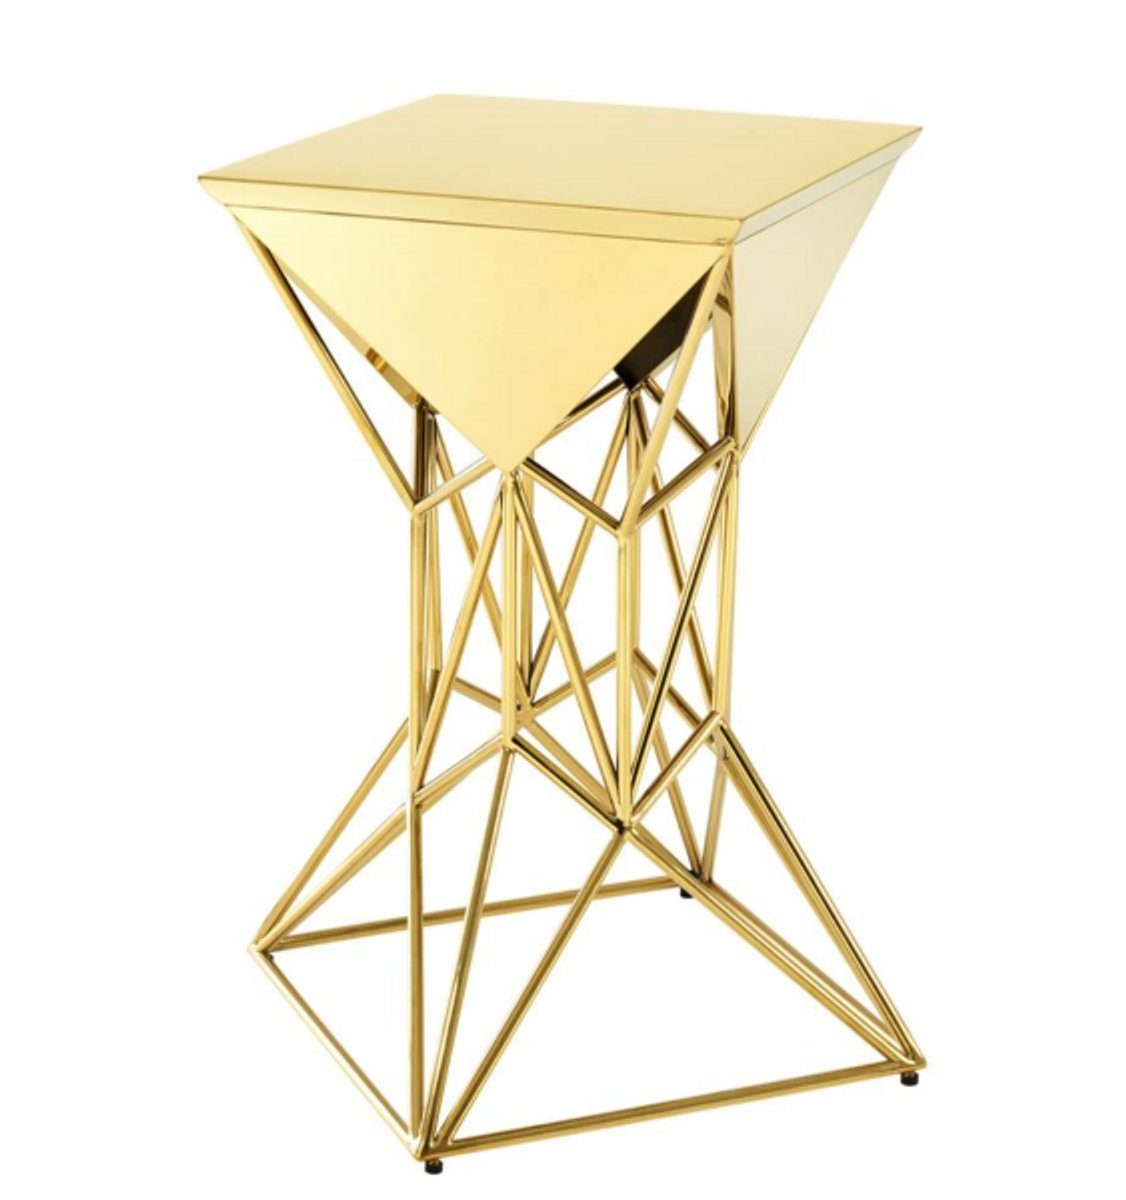 Casa Padrino Beistelltisch Luxus Art Deco Designer Beistelltisch Gold 36 x 36 x H. 60 cm - Luxus Designer Tisch